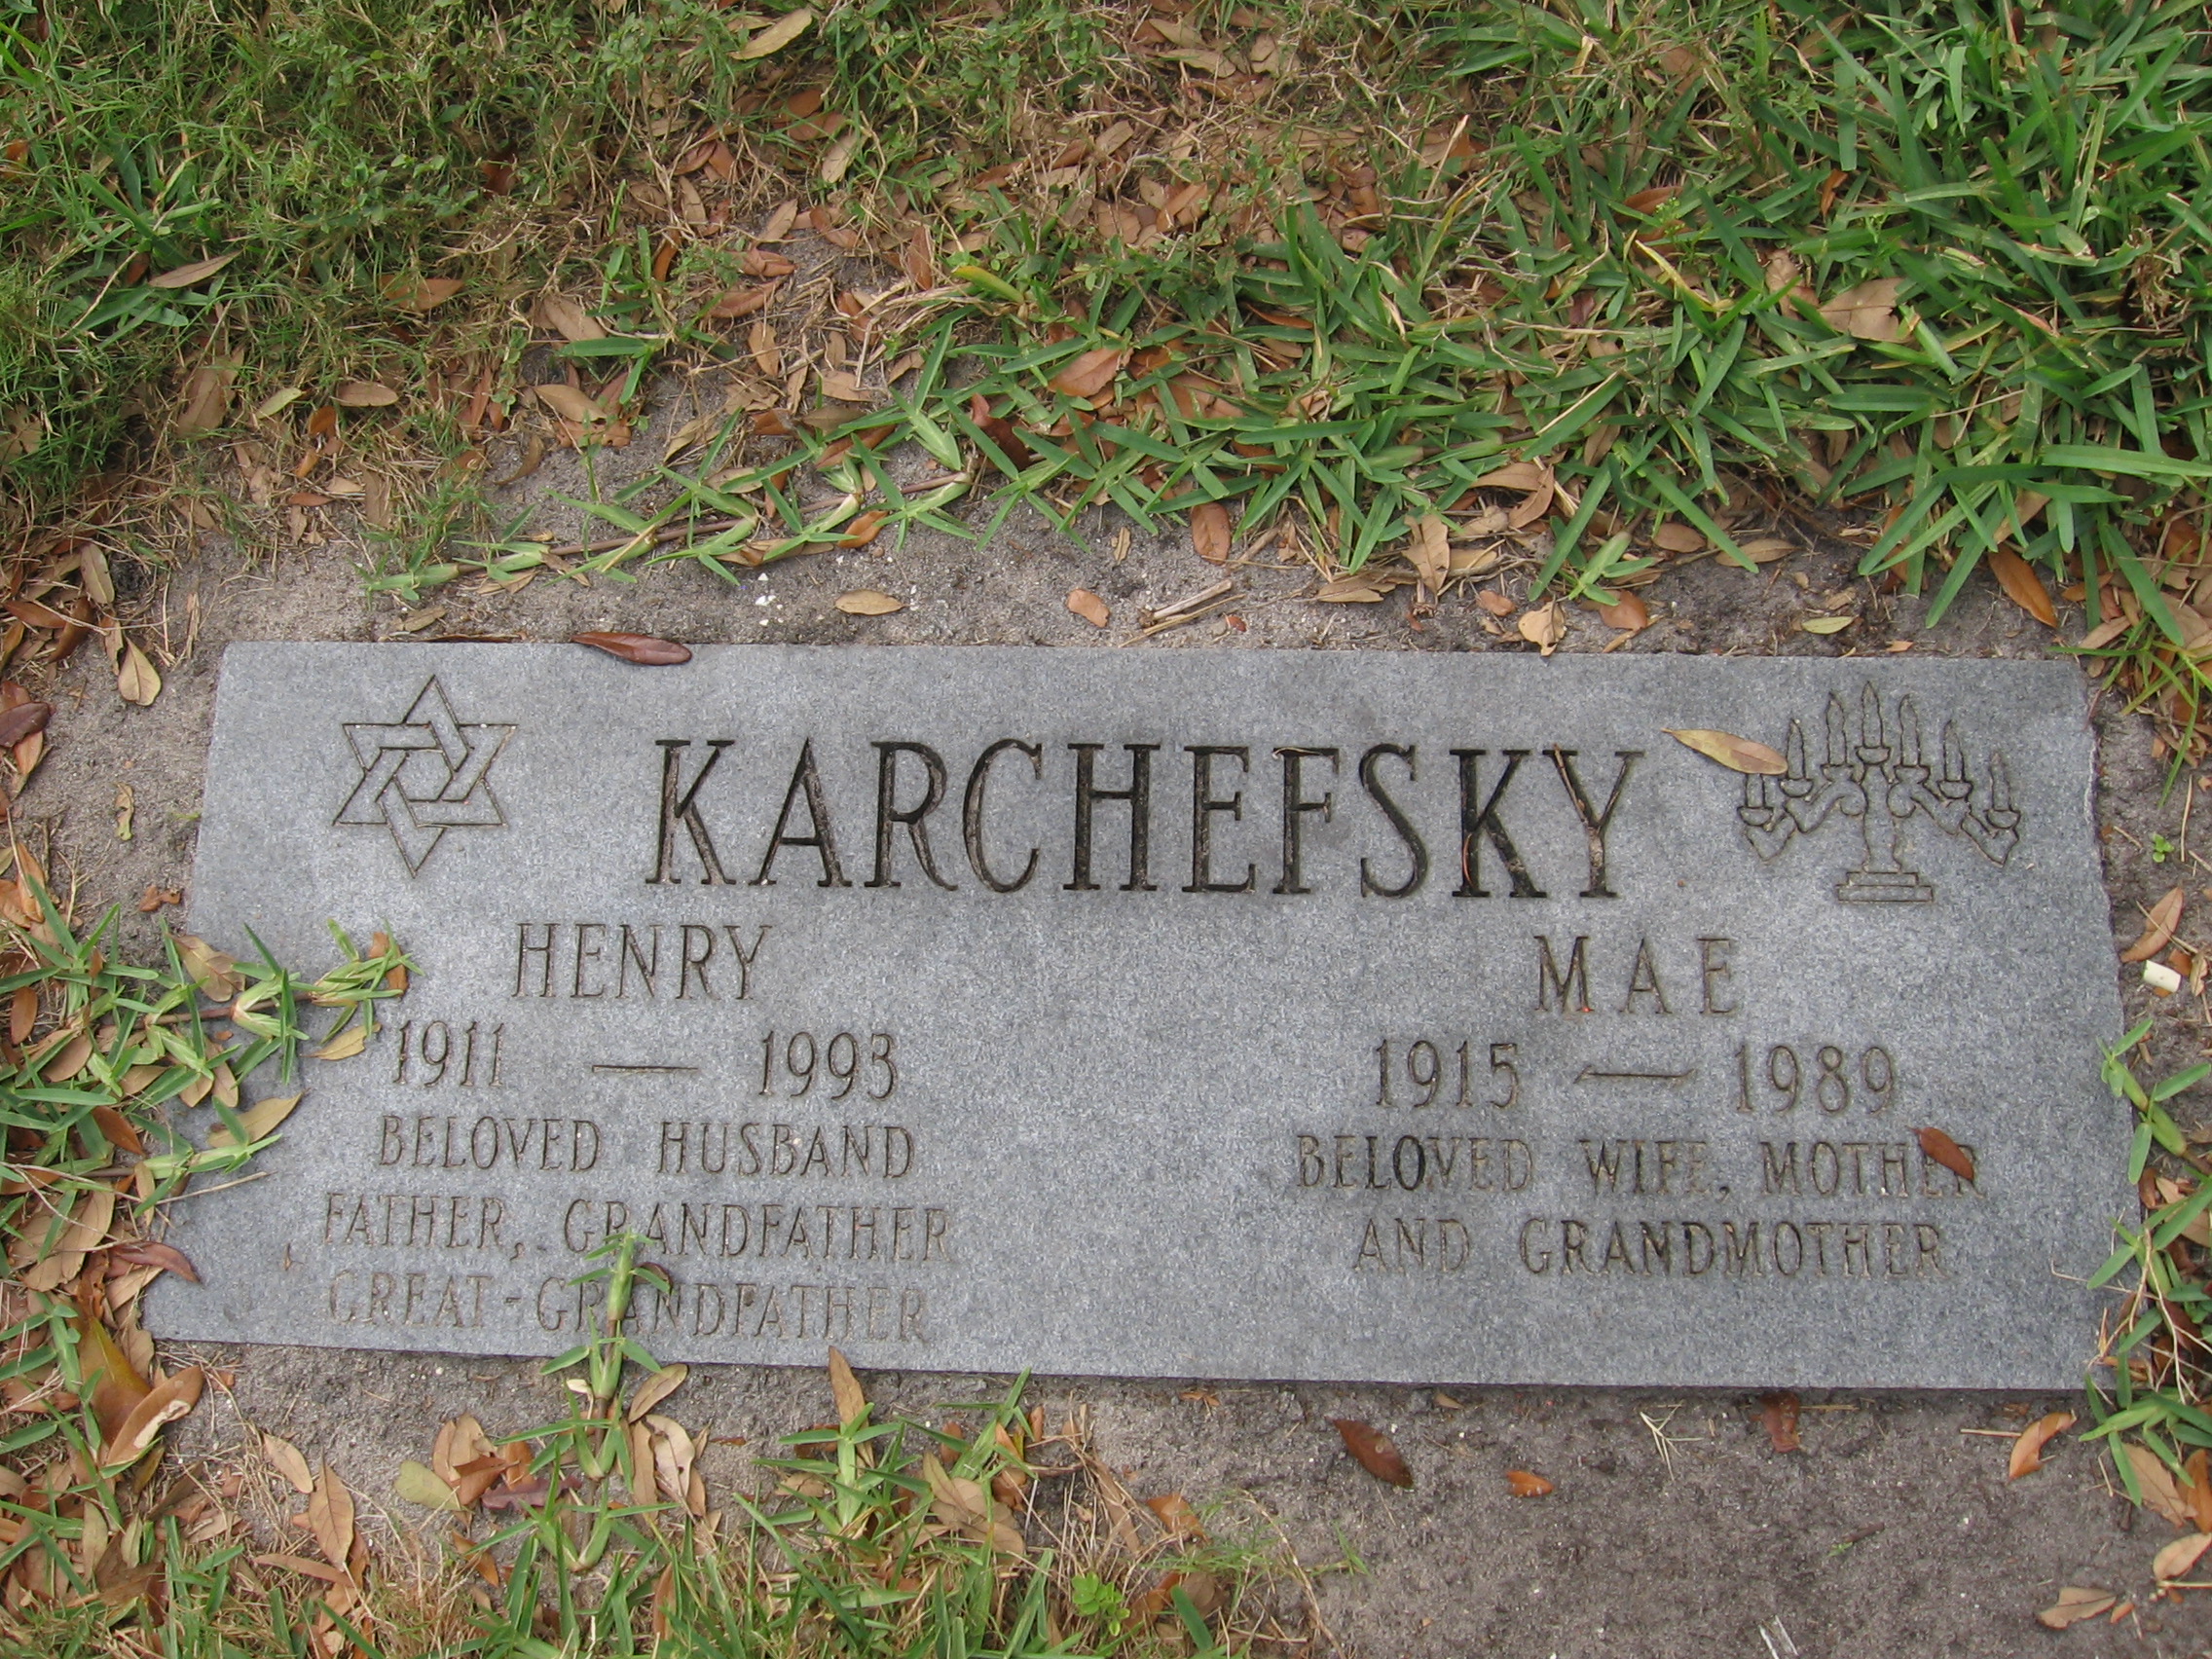 Henry Karchefsky